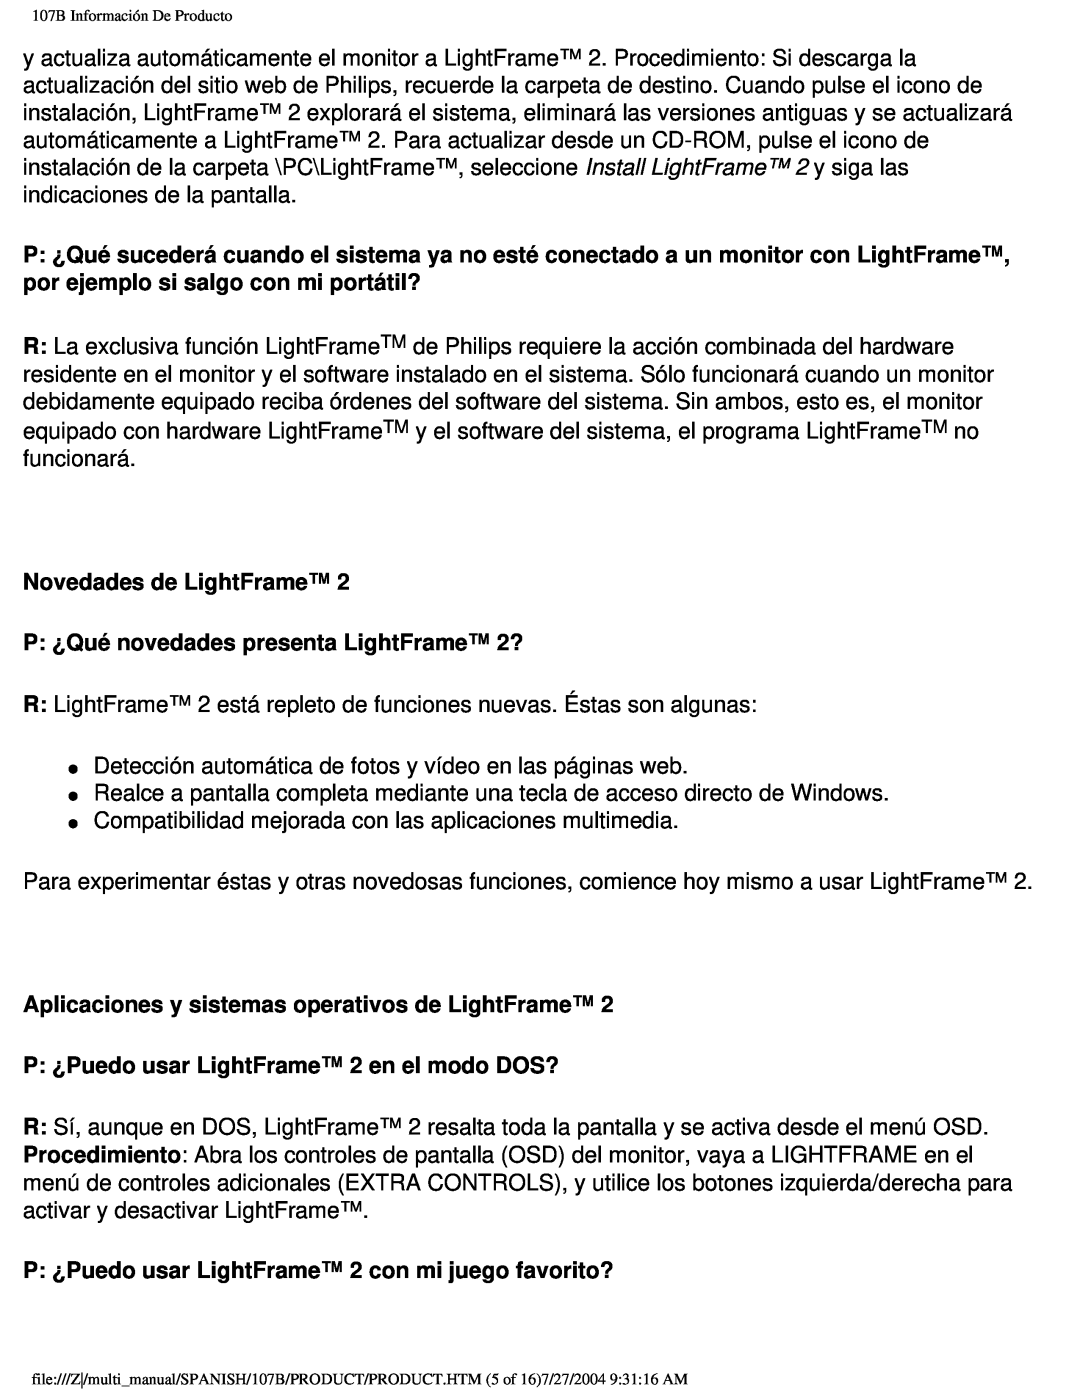 Philips 107B Novedades de LightFrame P ¿Qué novedades presenta LightFrame 2?, P ¿Puedo usar LightFrame 2 en el modo DOS? 